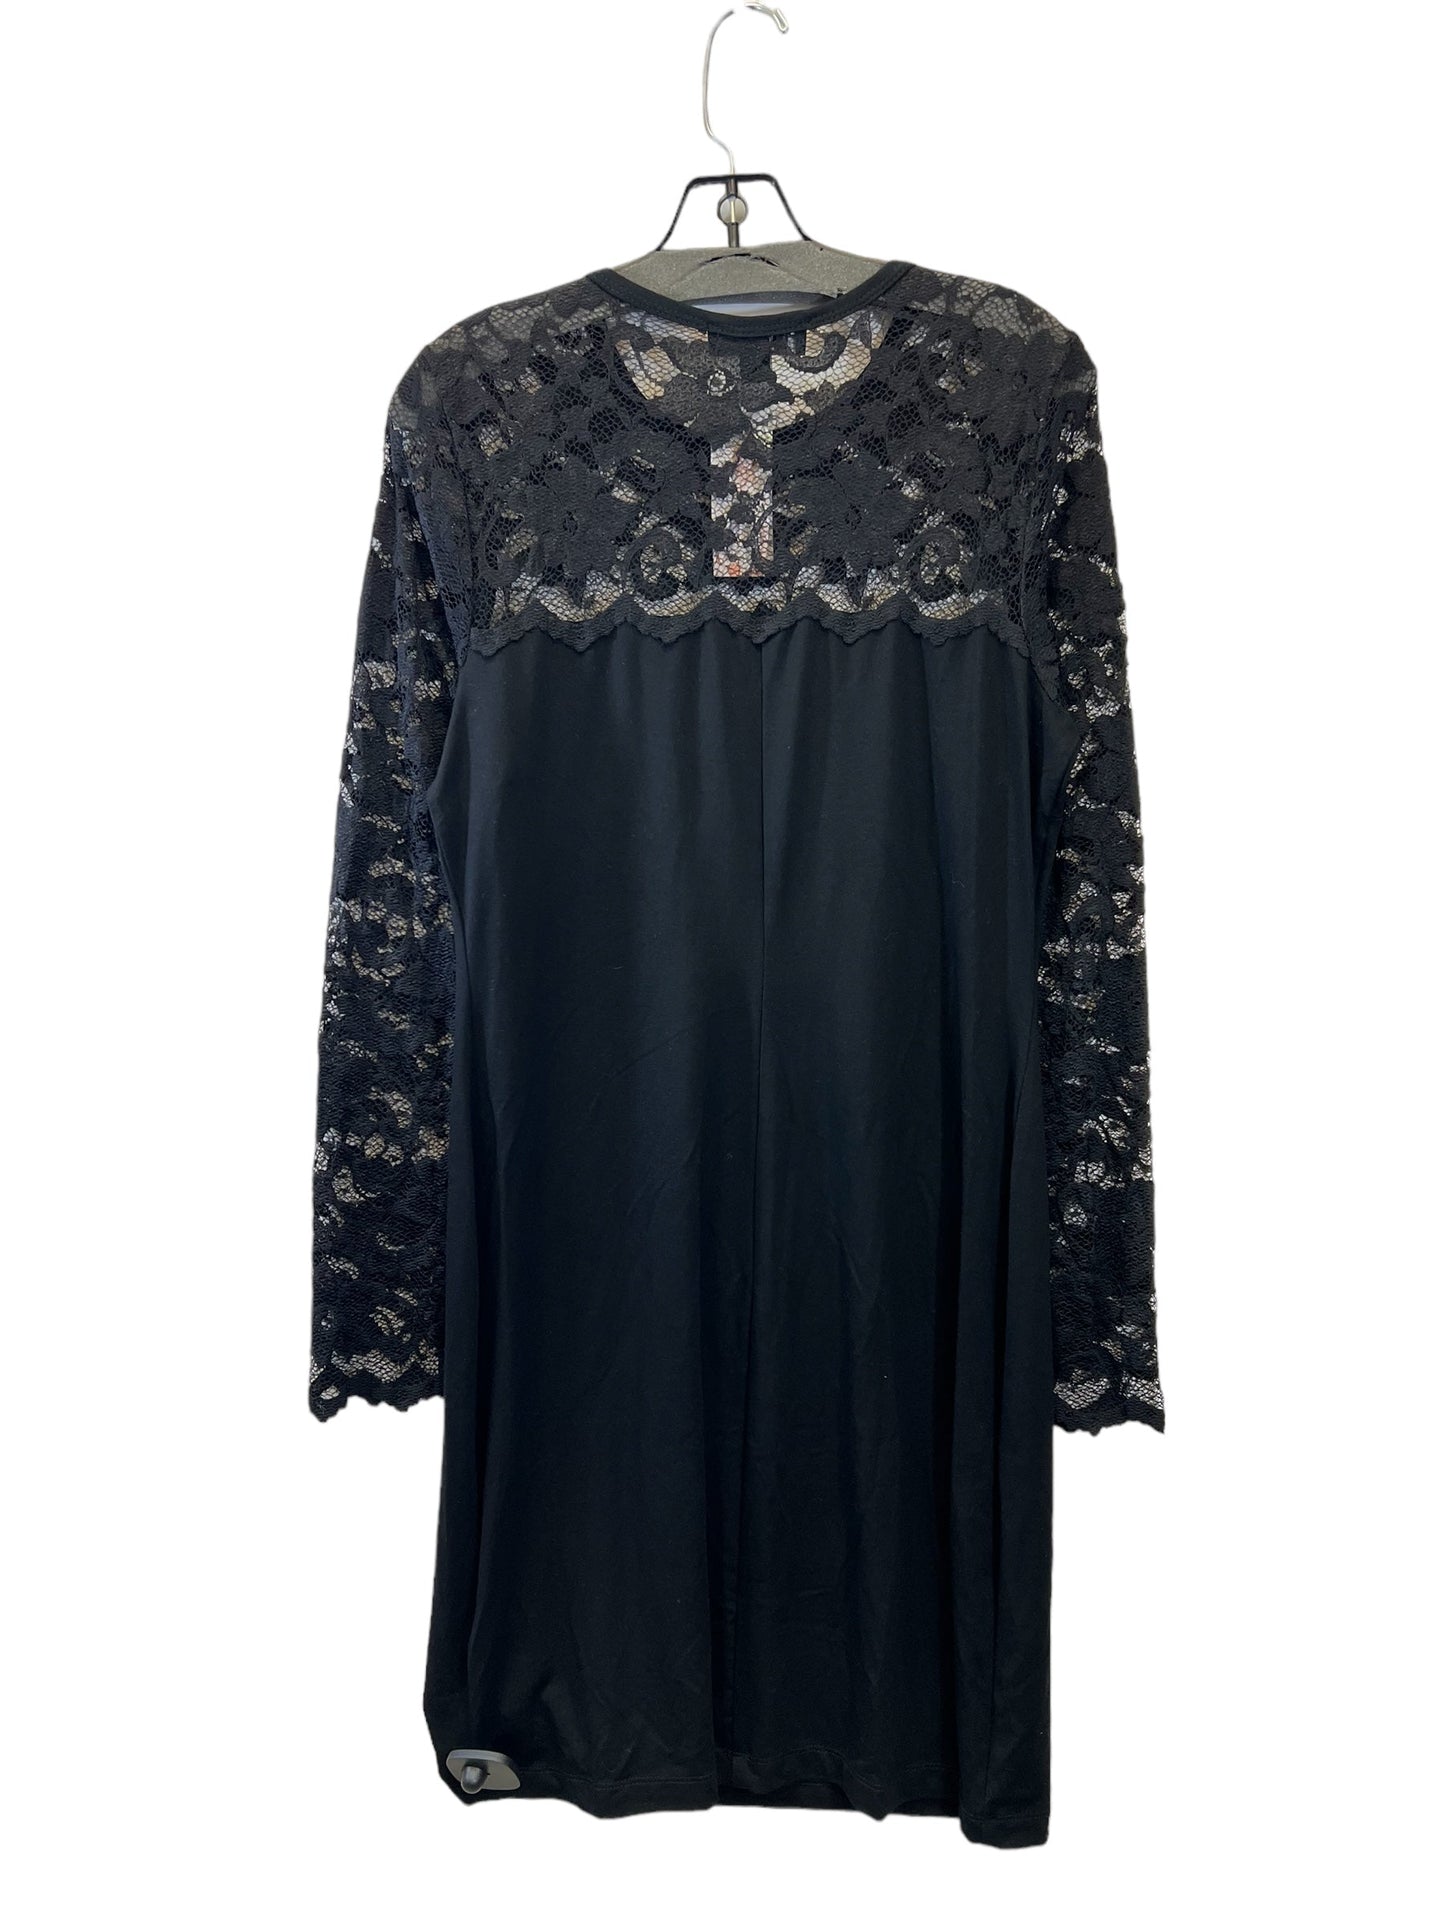 Dress Casual Midi By Karen Kane  Size: L